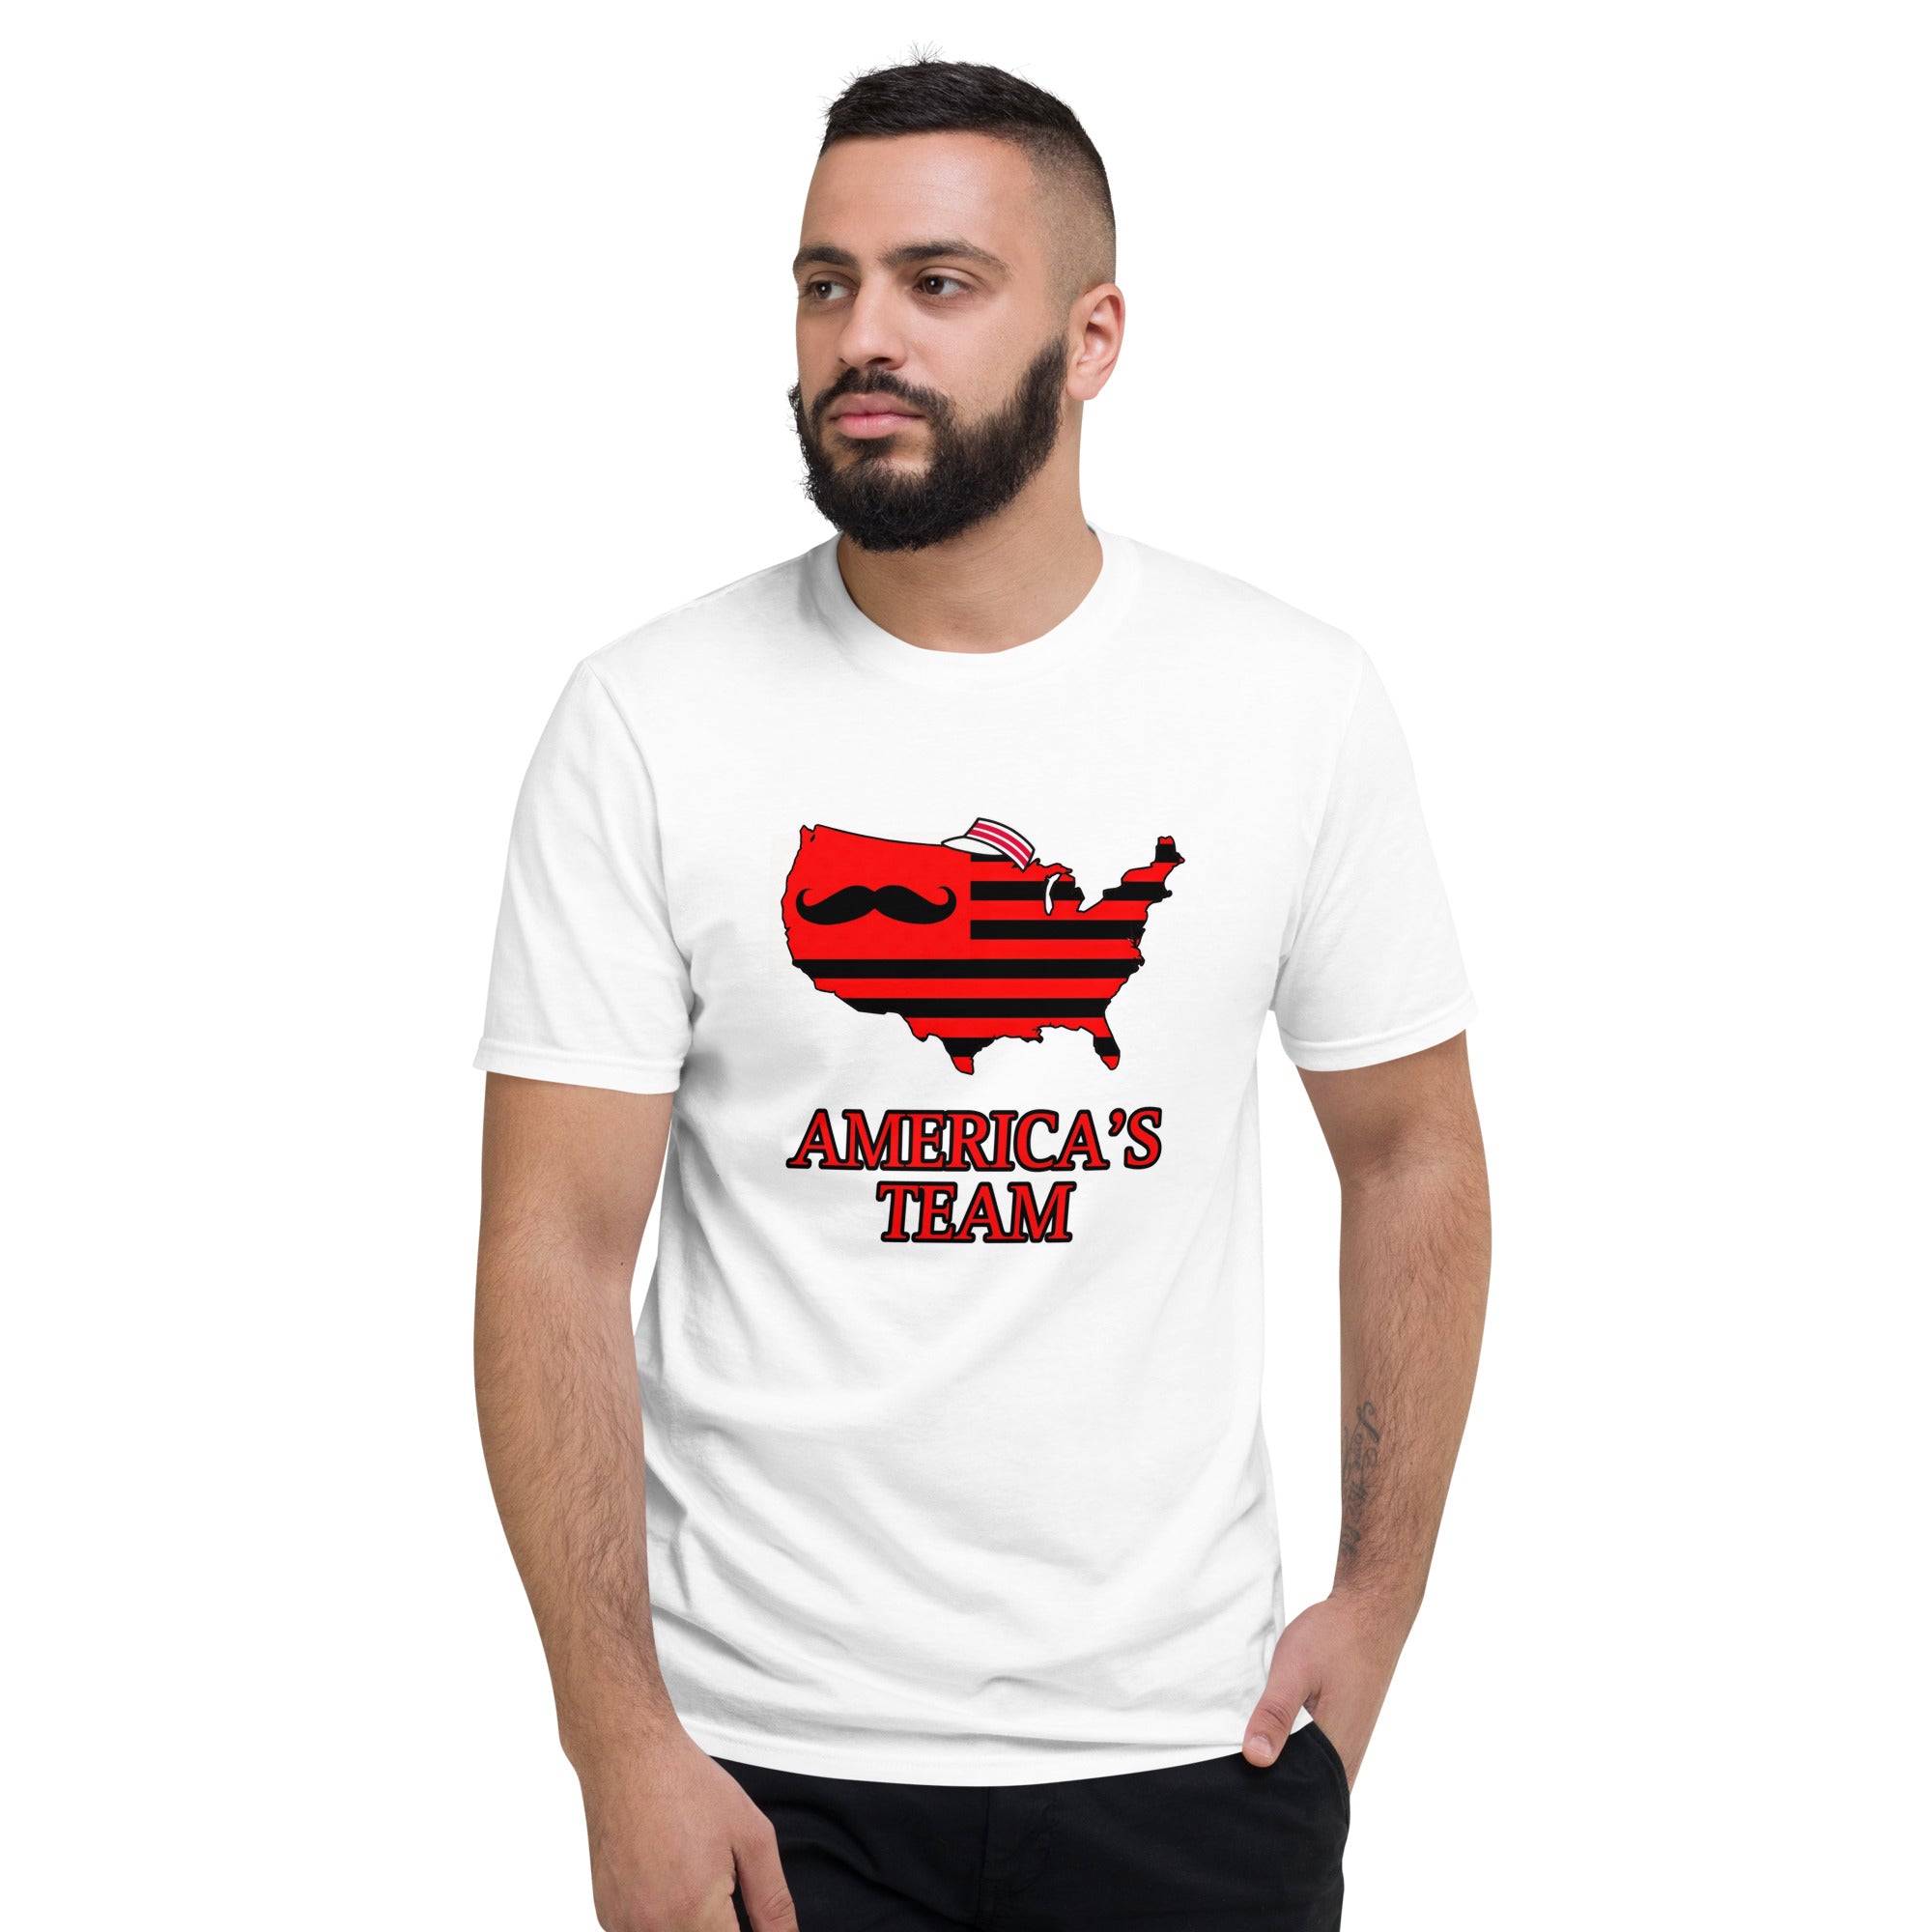 America's Team T-Shirt (Reds)